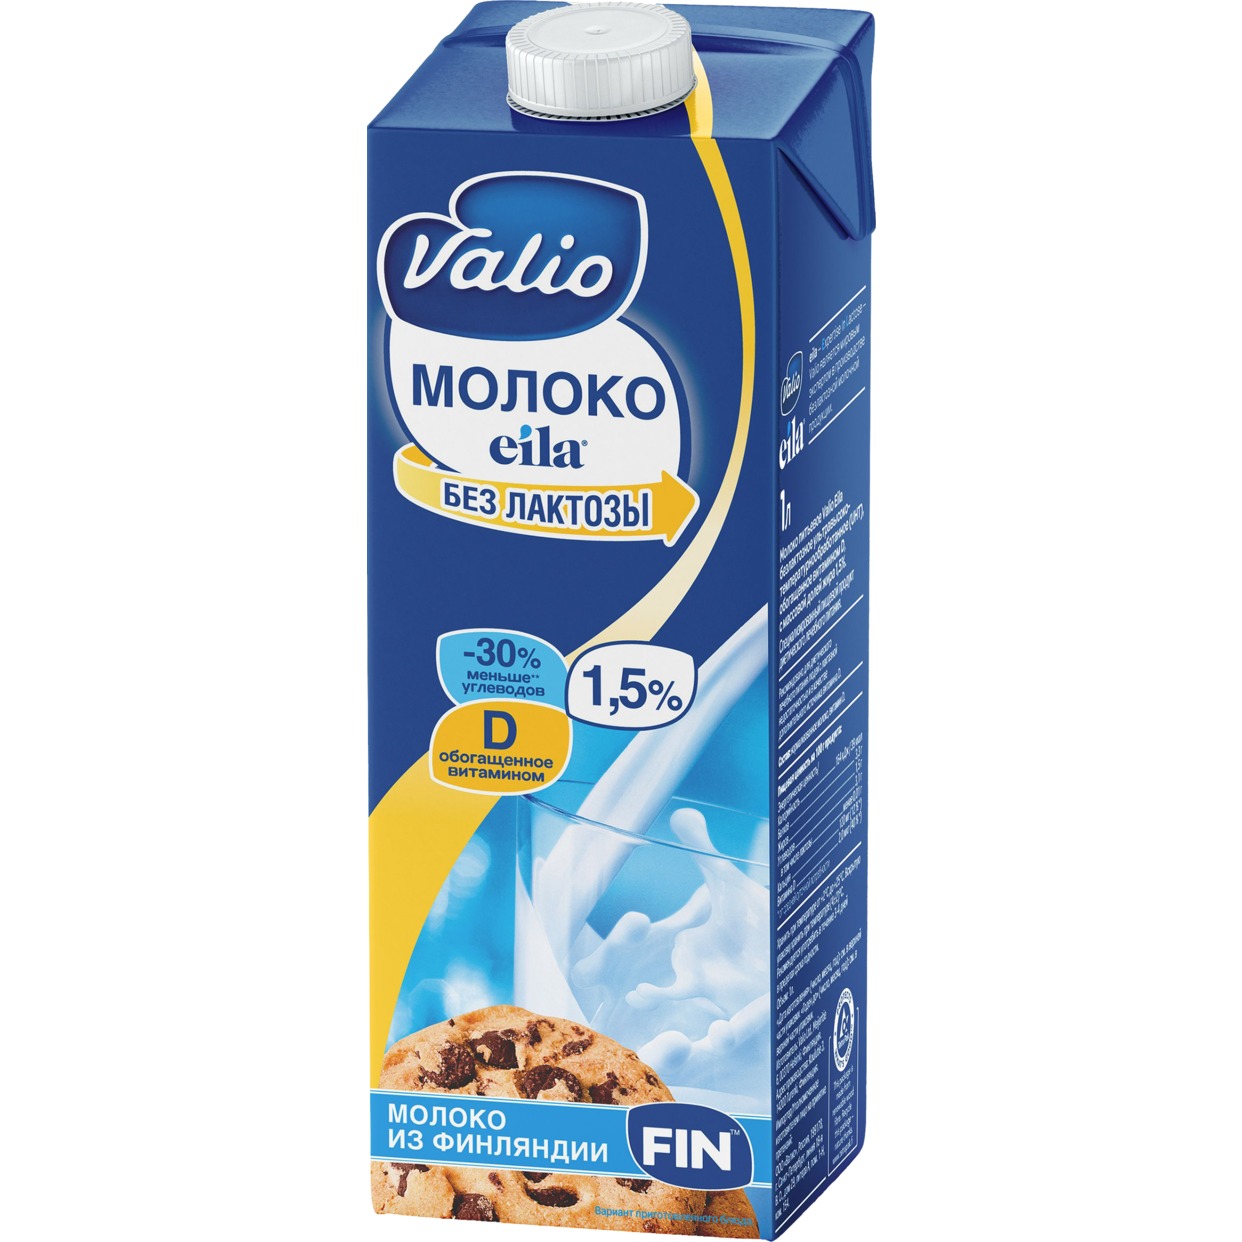 VALIO Молоко ZERO LACTOSE ул/паст.1,5%1л по акции в Пятерочке